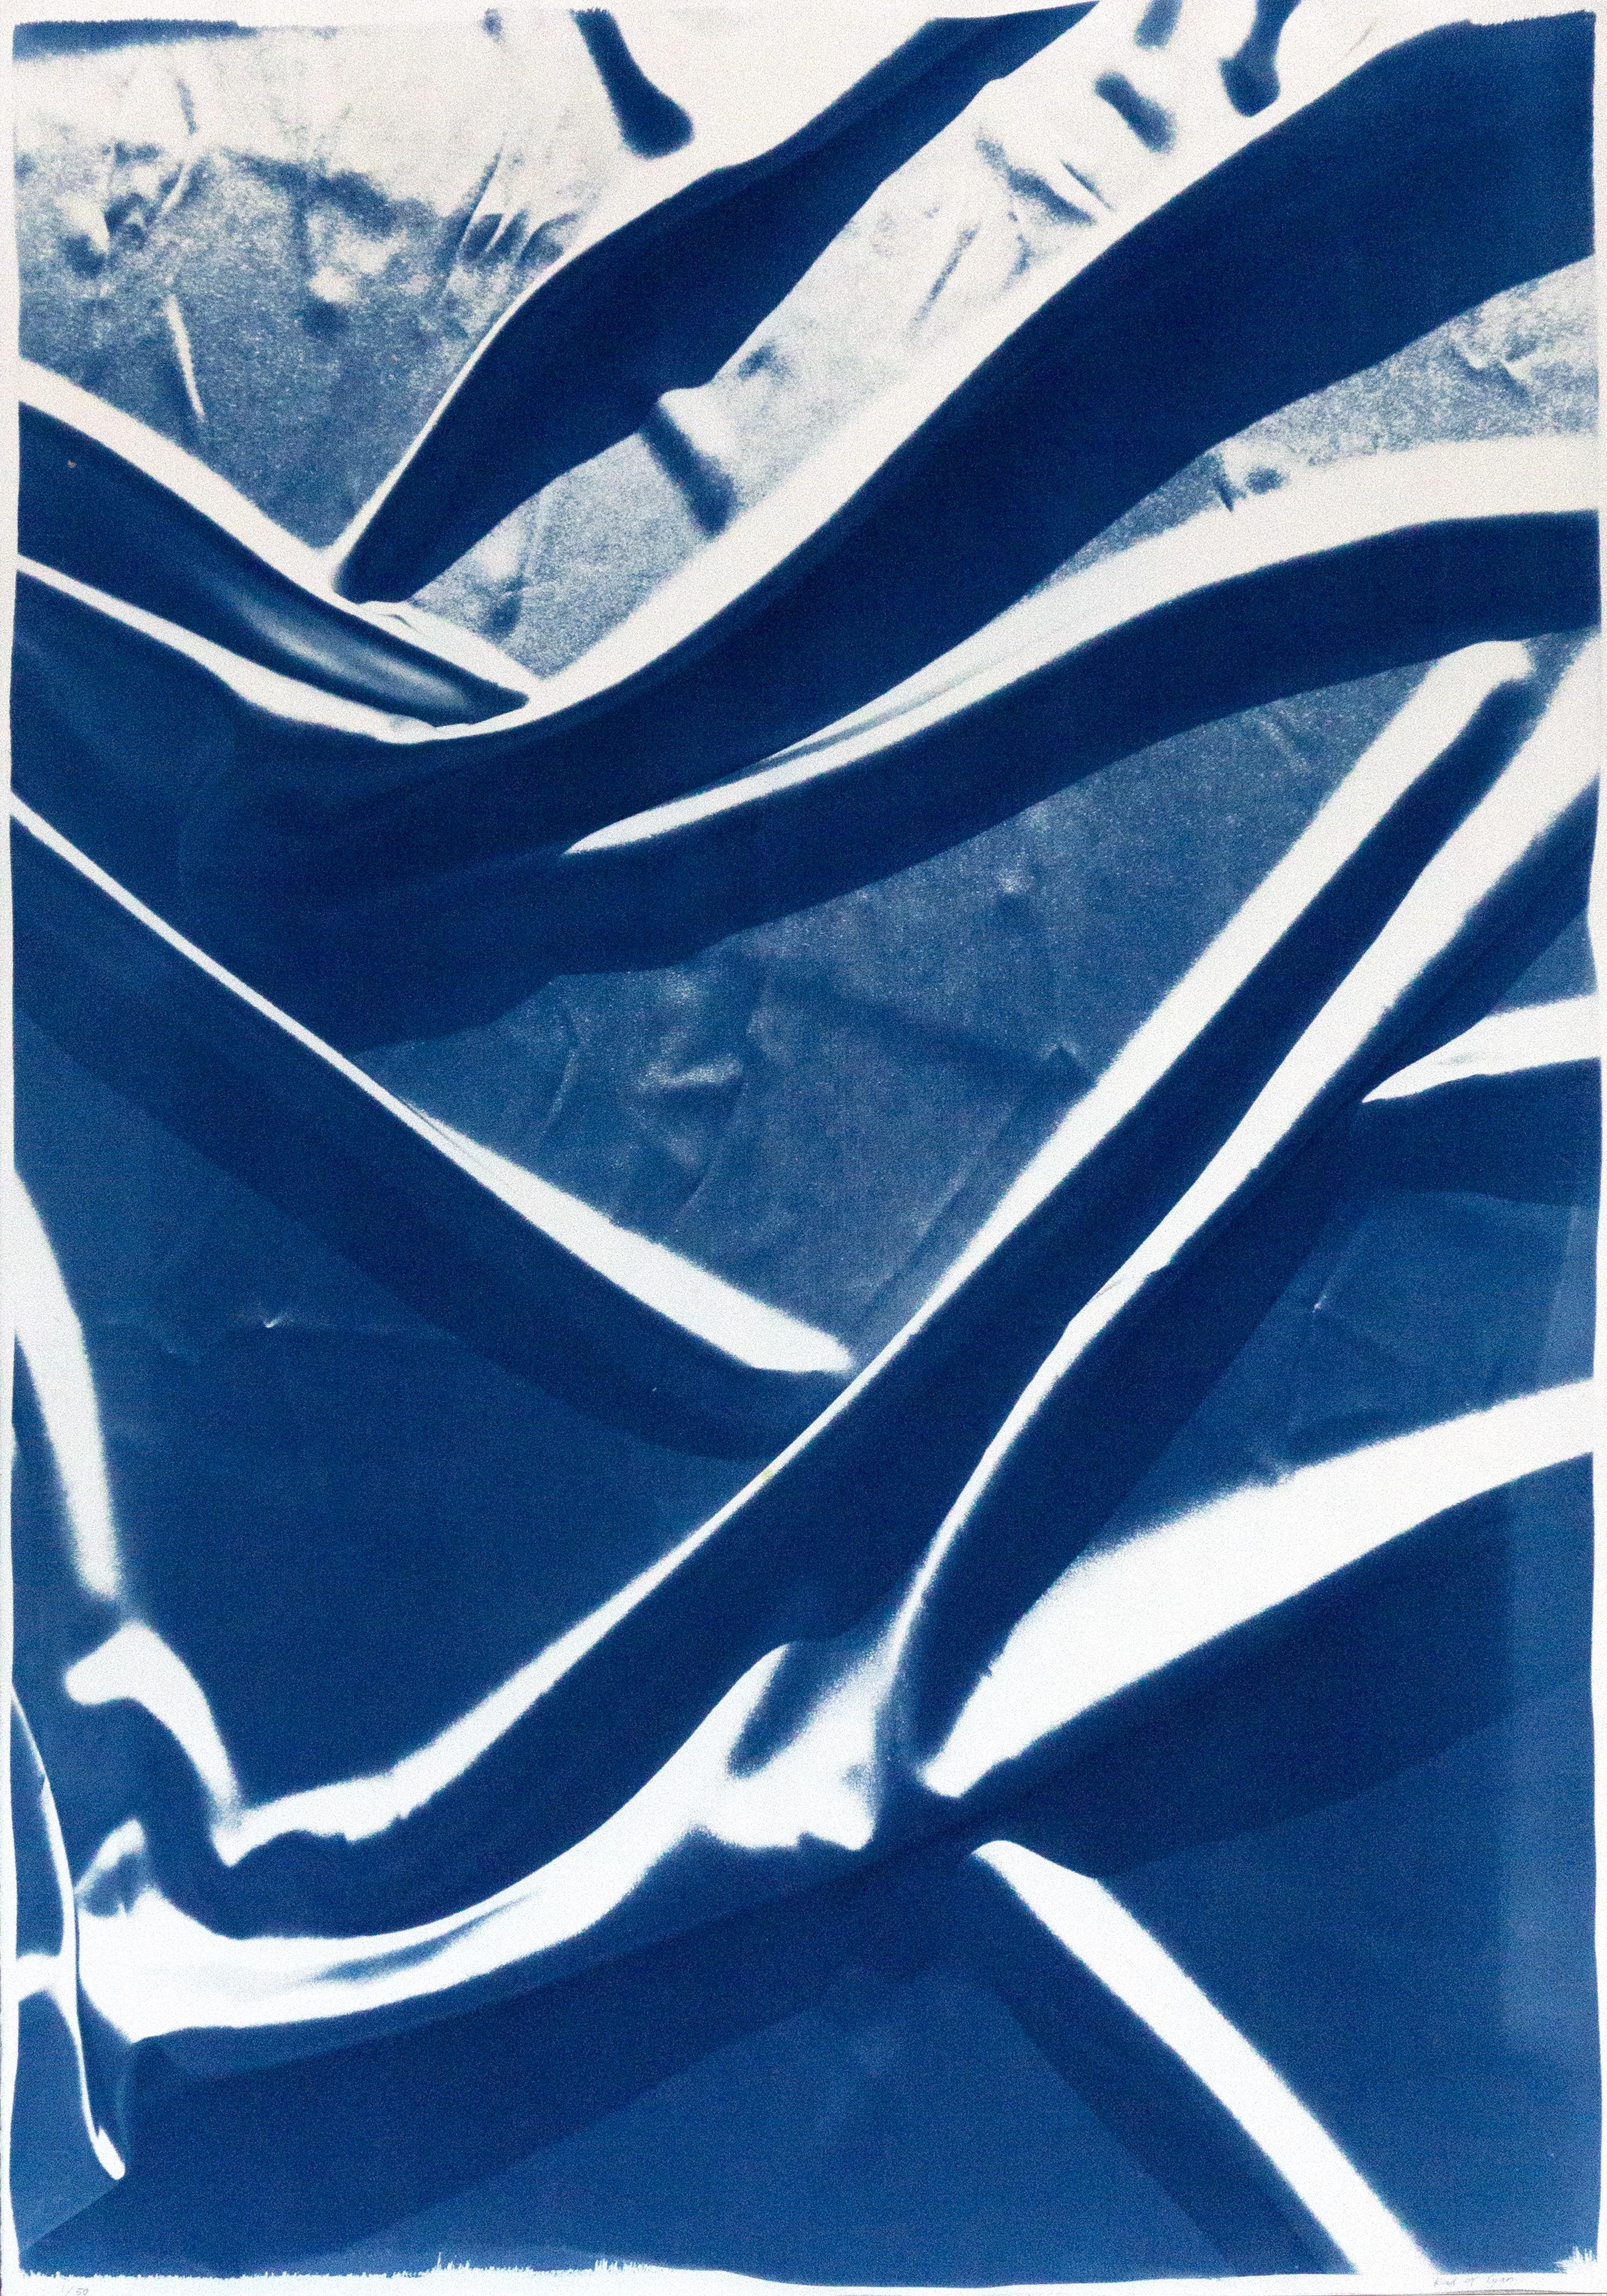 Klassische klassische blaue Muster, handgefertigter Cyanotyp, abstrakter rauchfarbener Seidenstoff auf Papier